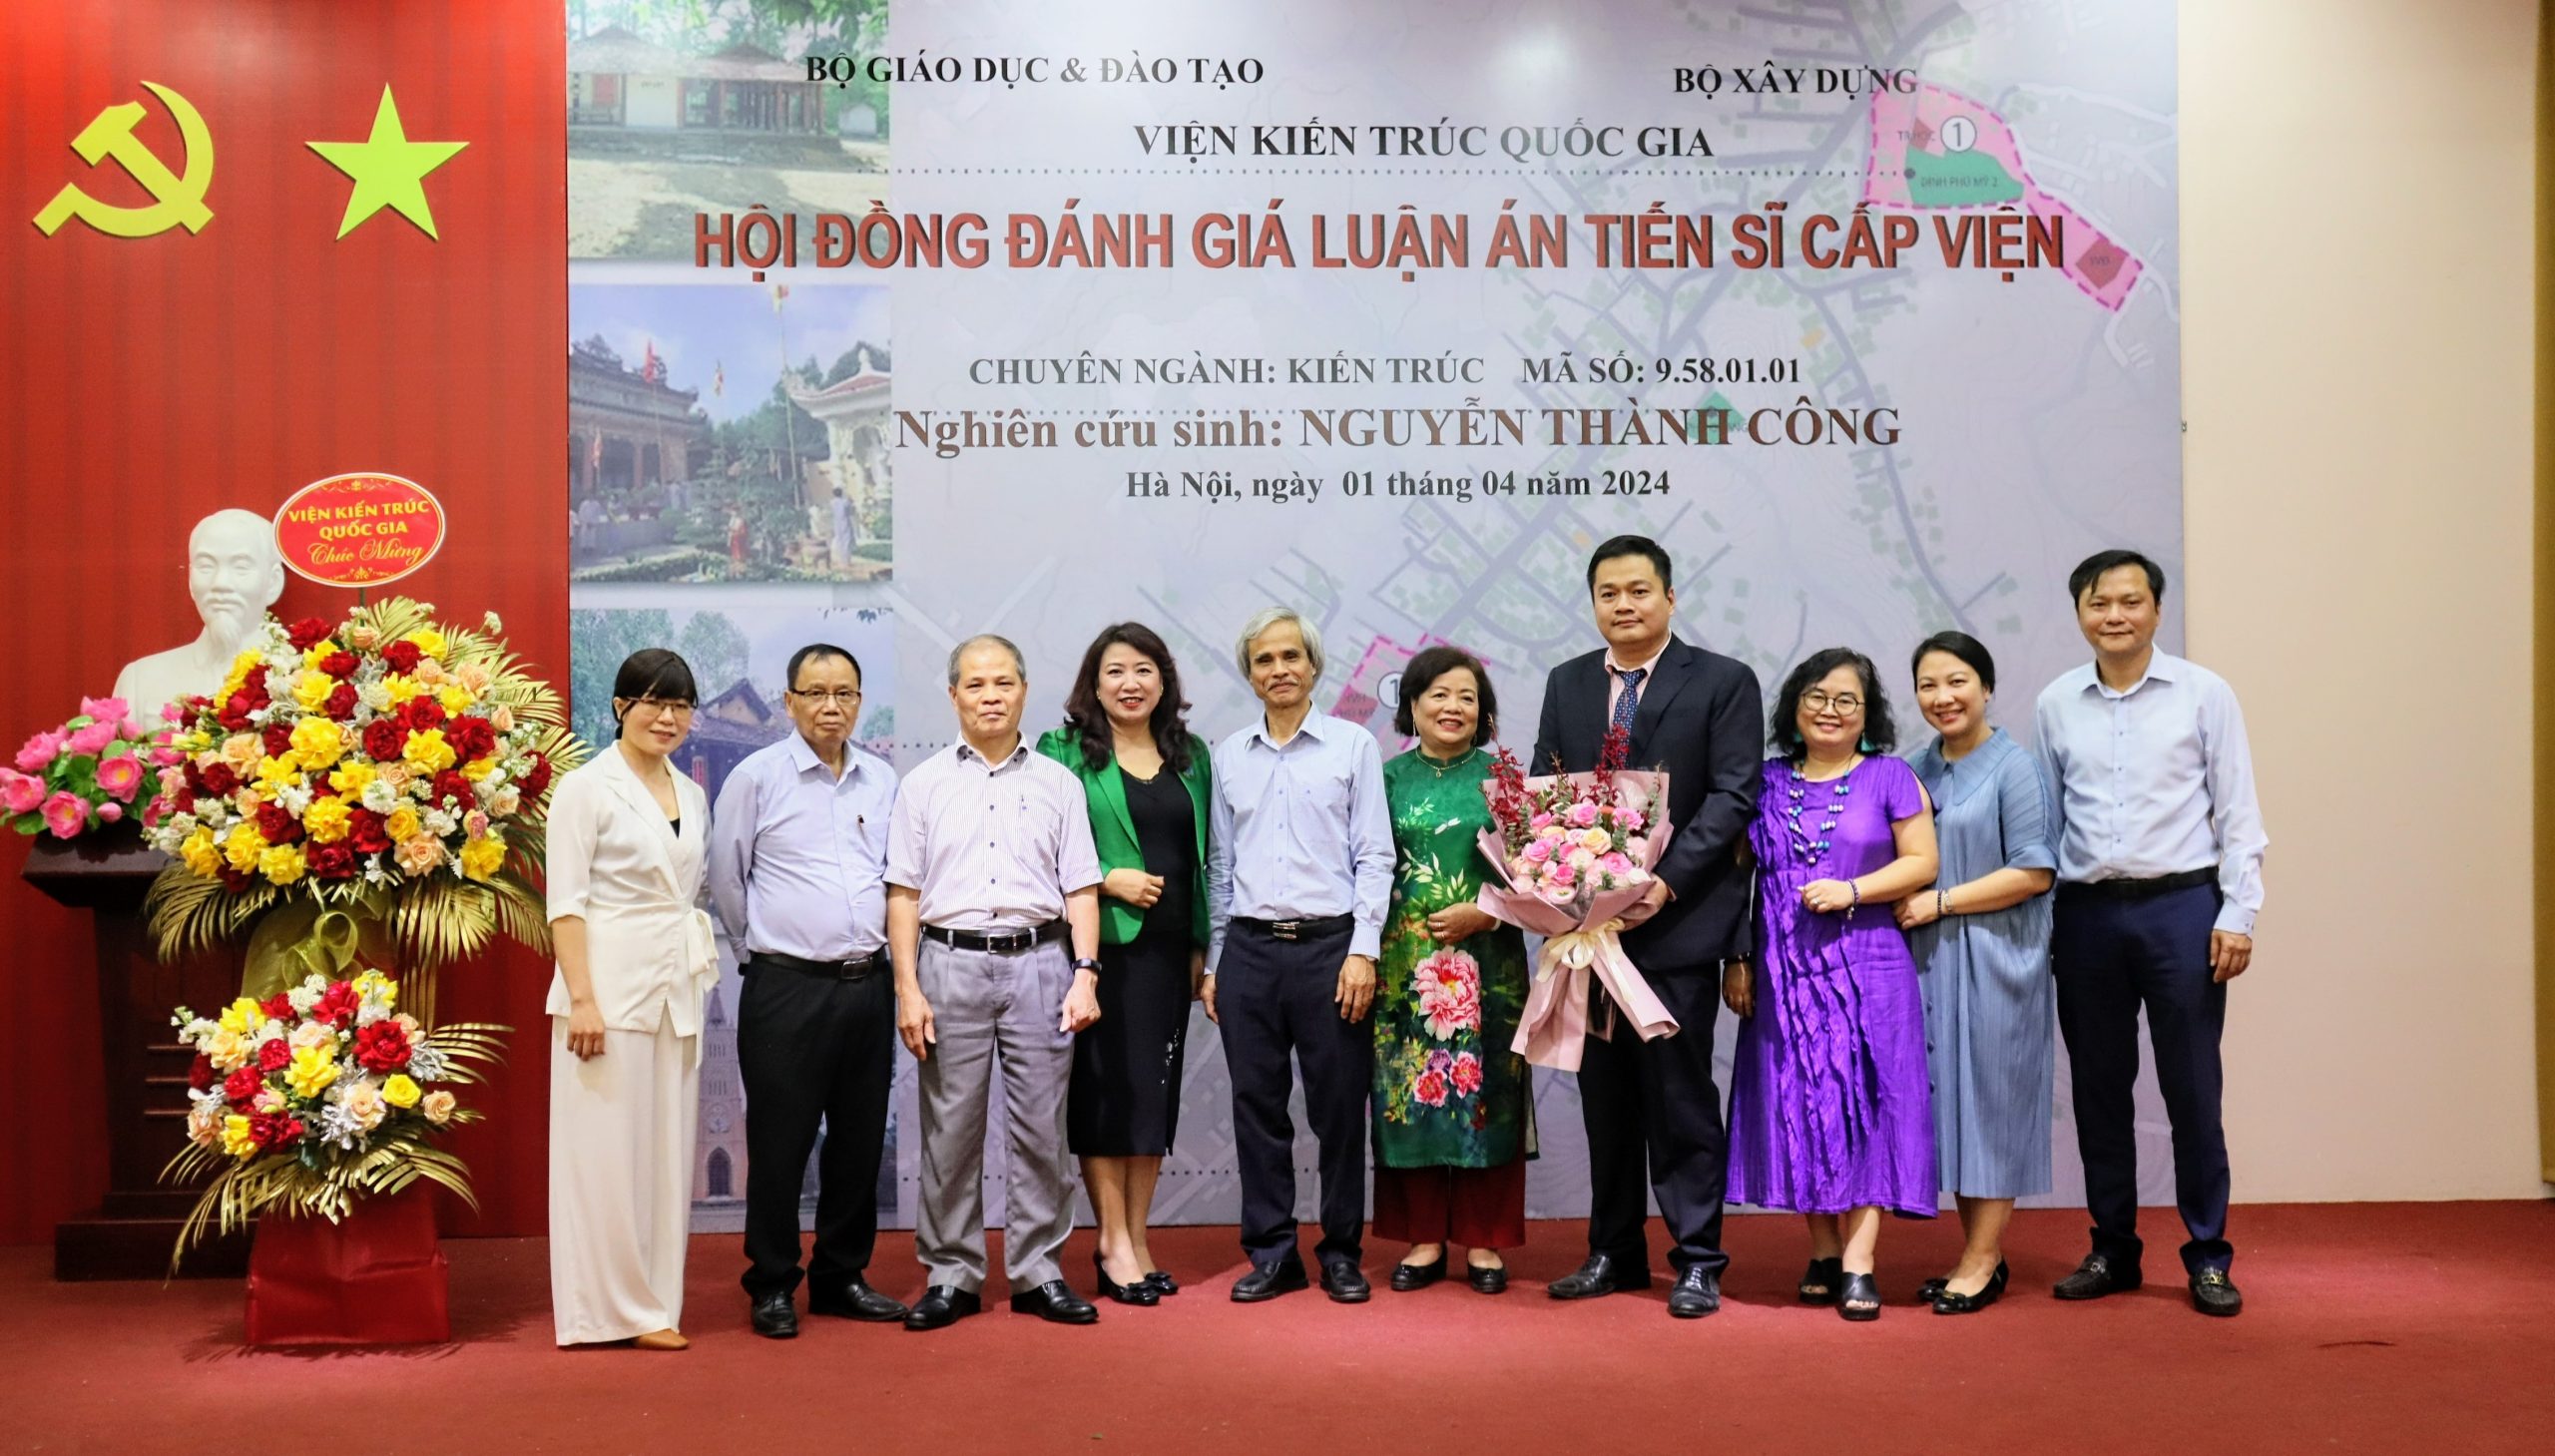 Hội đồng đánh giá luận án tiến sĩ cấp Viện cho NCS Nguyễn Thành Công